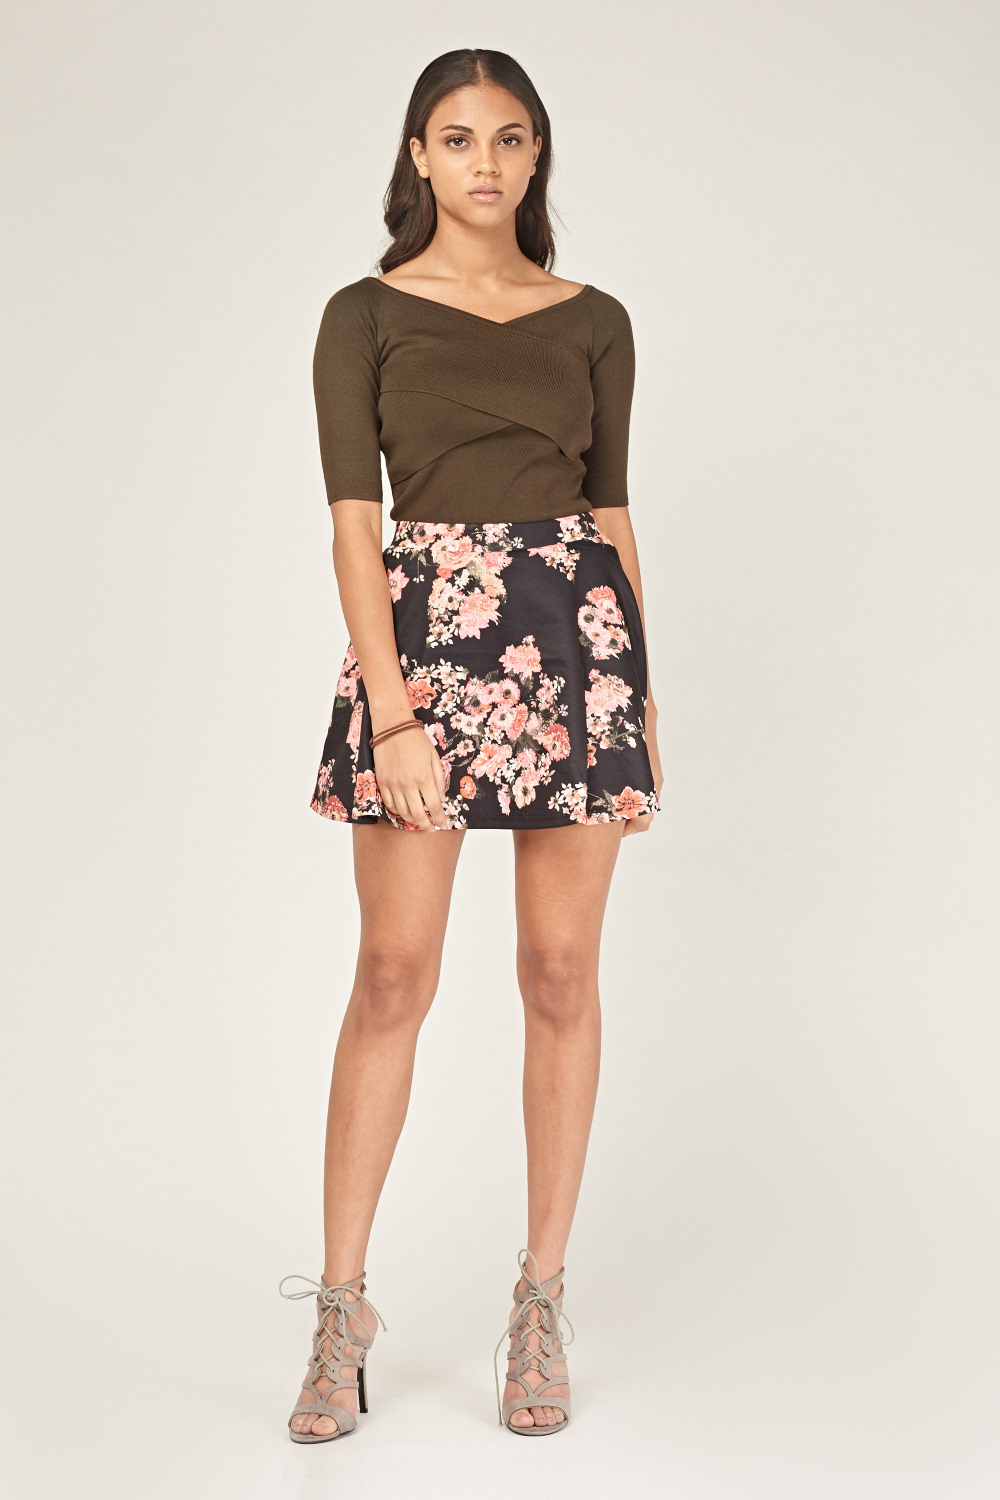 Download Floral Mini Skater Skirt - Just £5